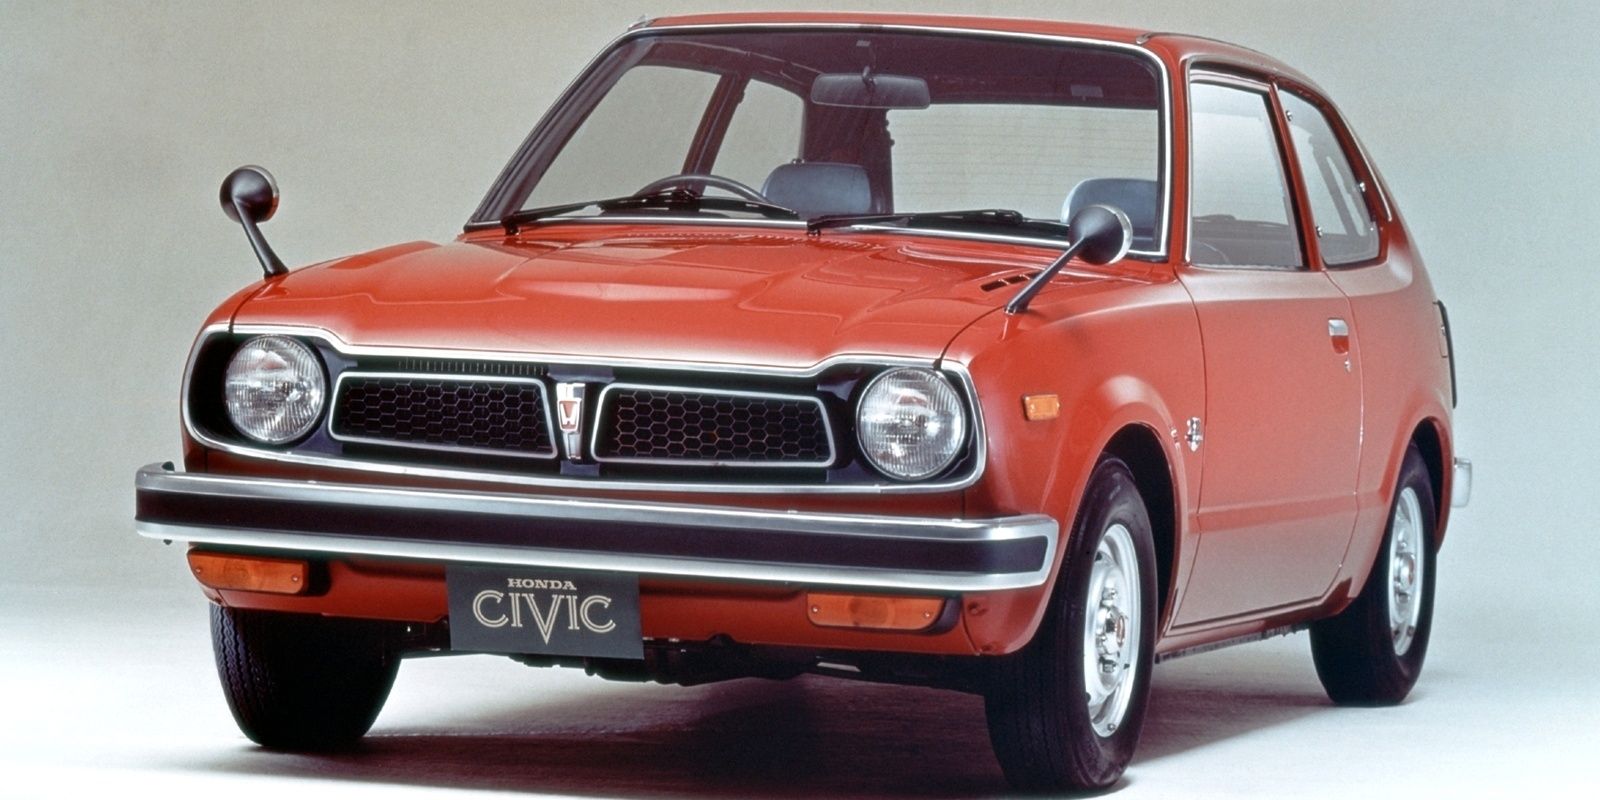 1972 Honda Civic - 1st Generation-